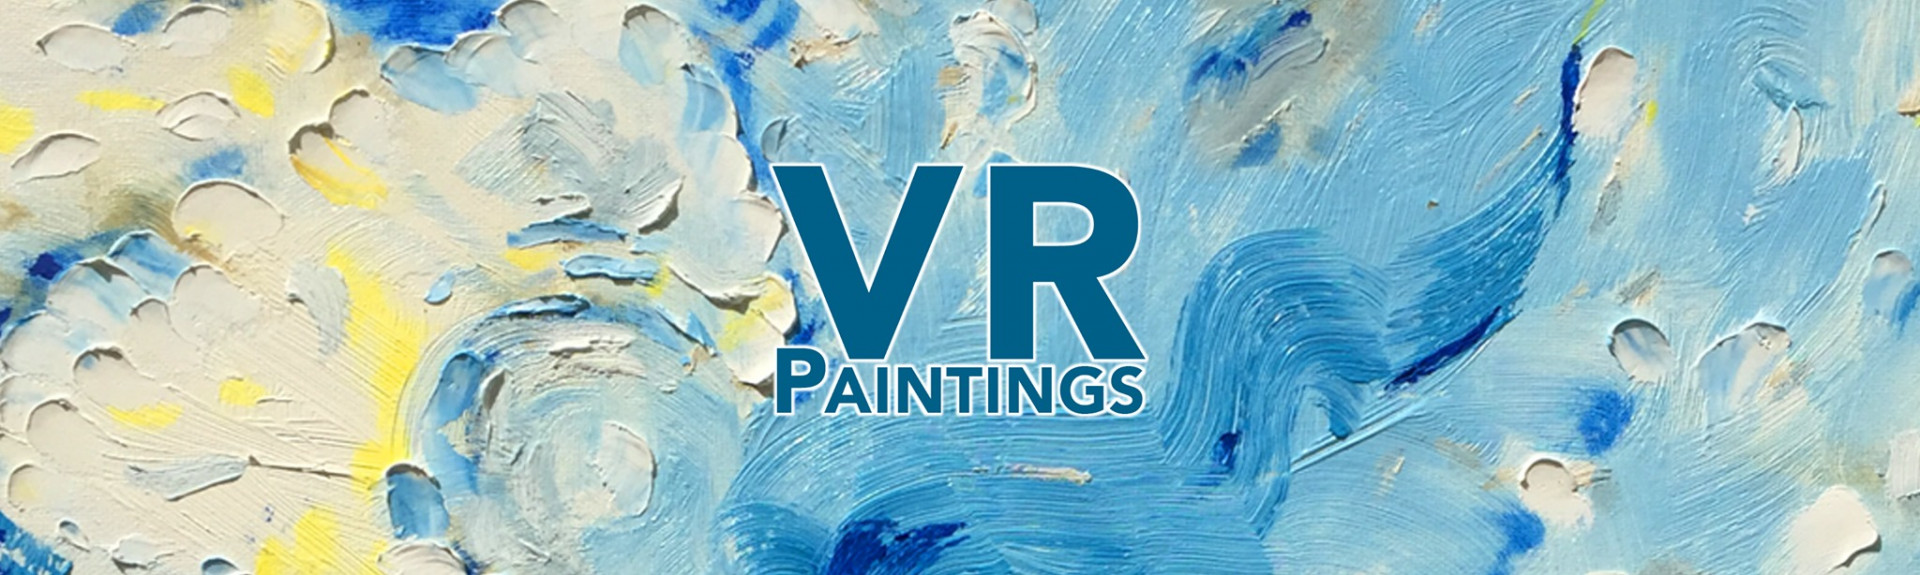 VR Paintings